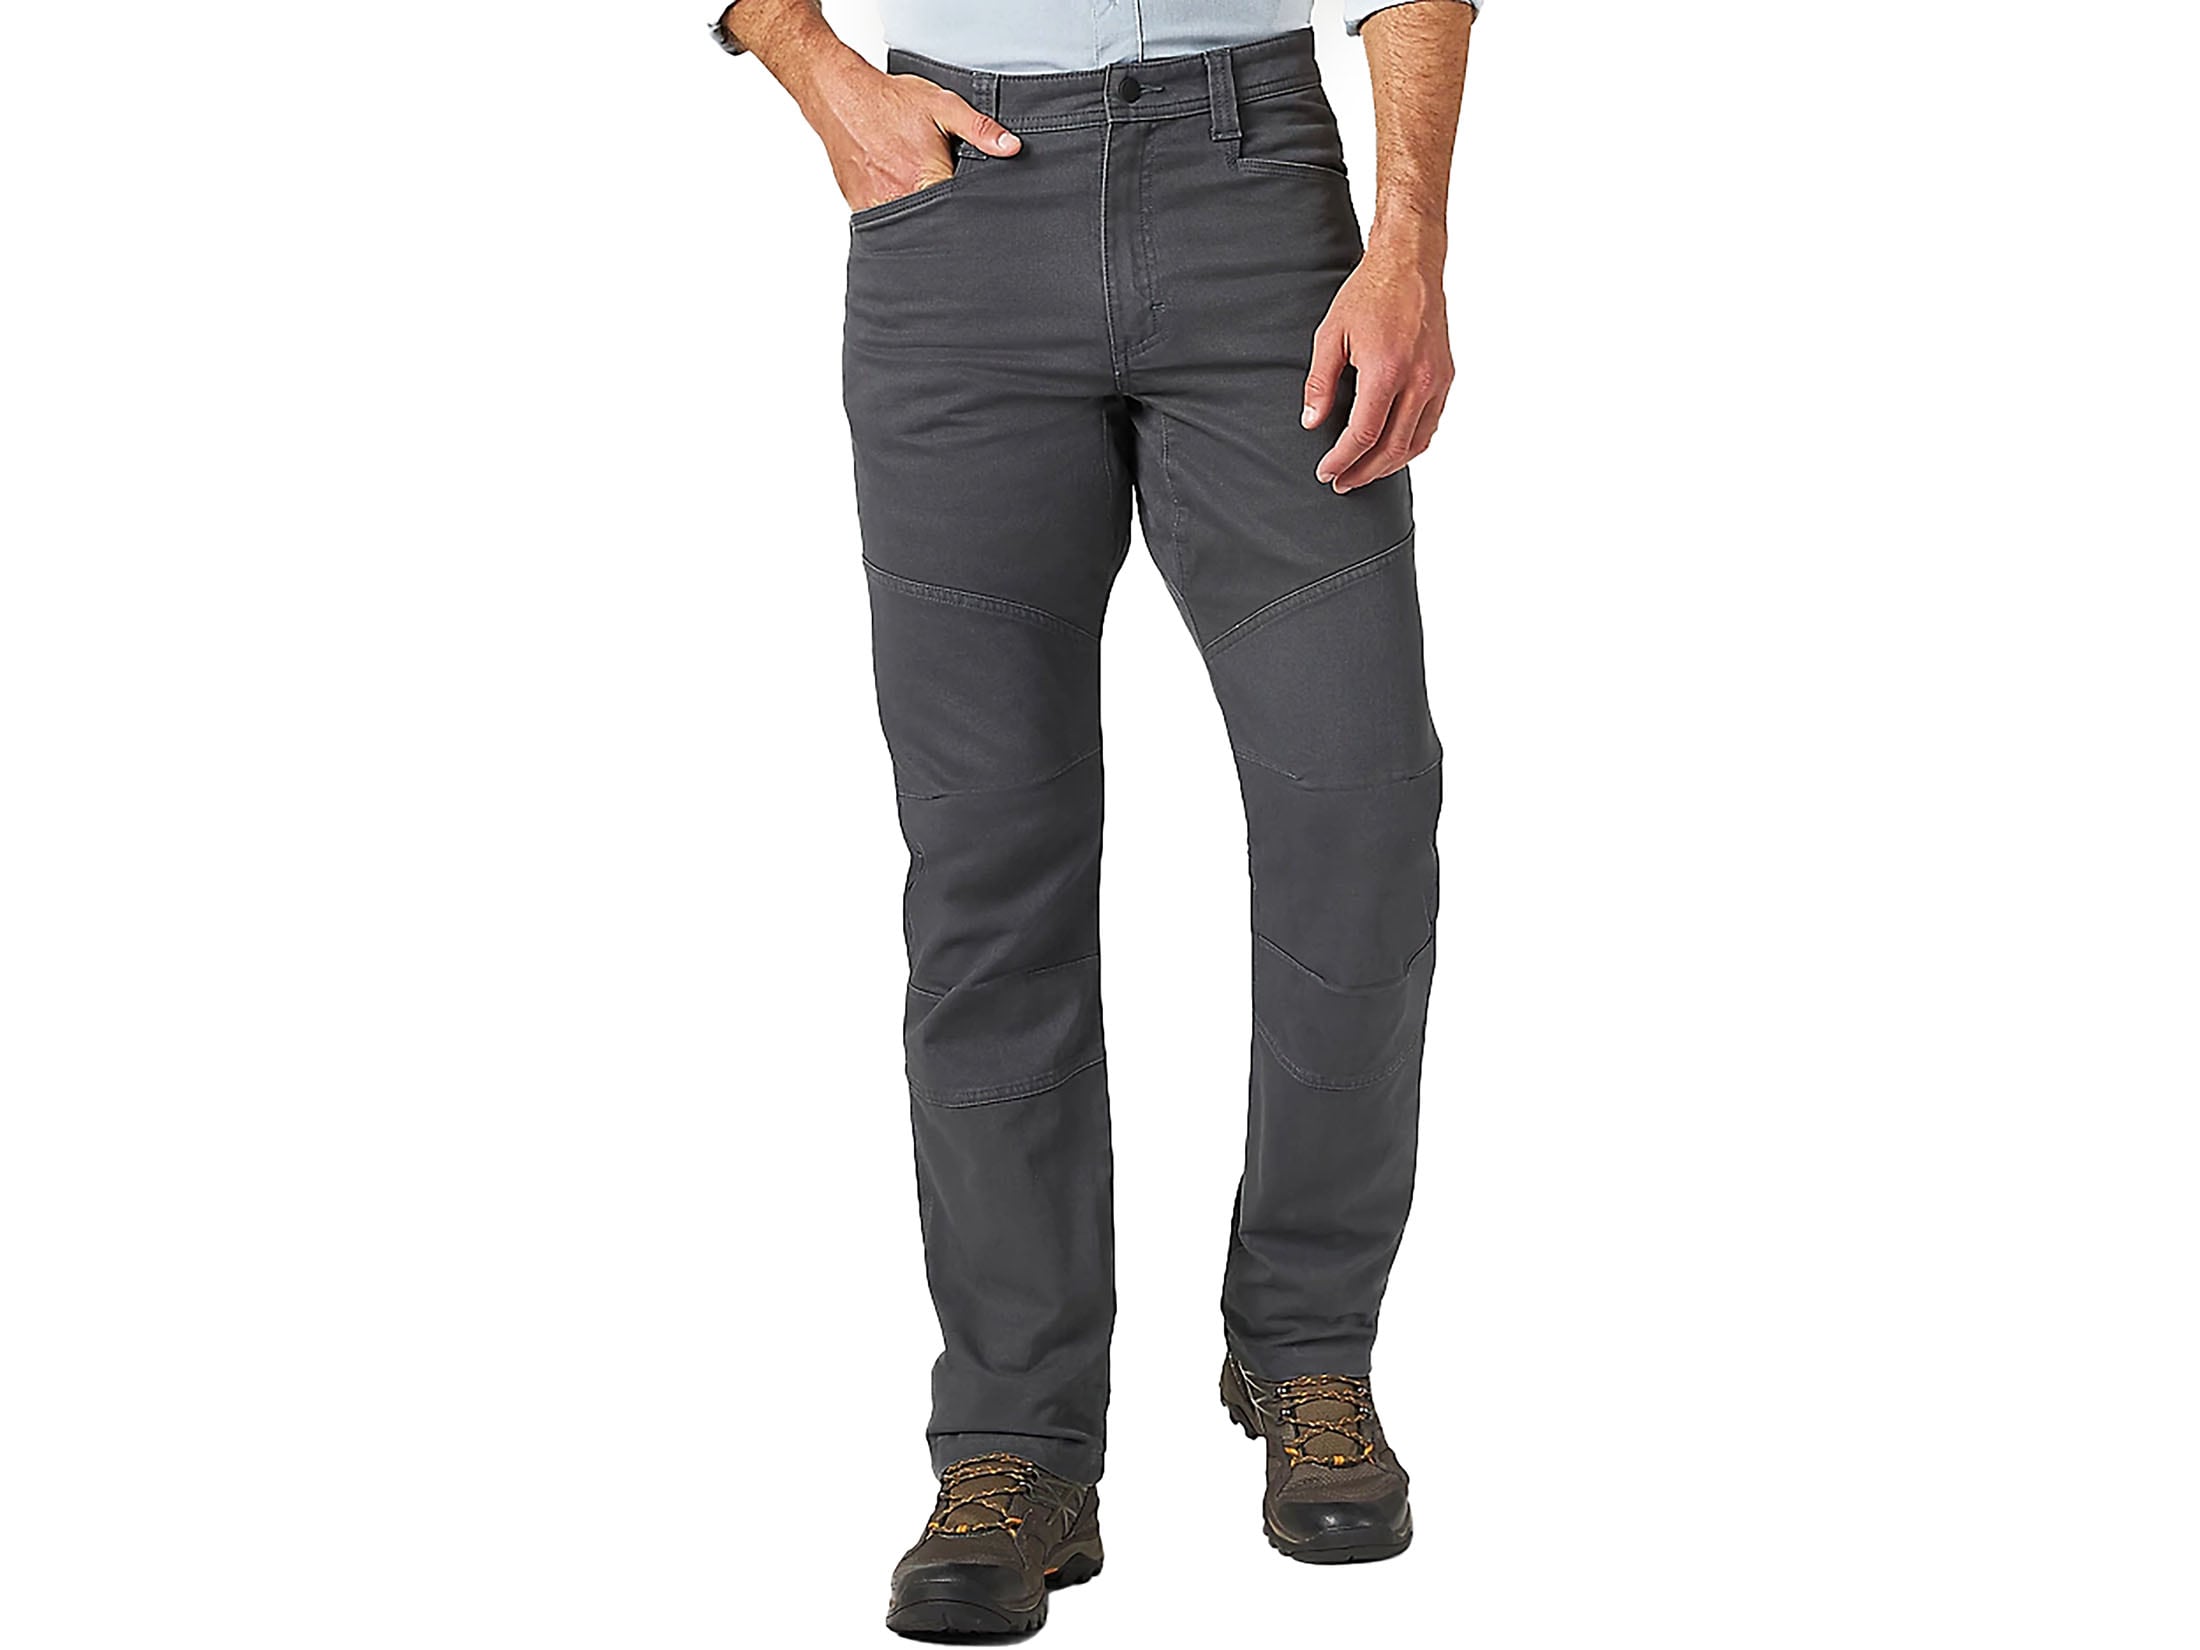 Wrangler Men's ATG Reinforced Utility Pants Gray 40 Waist 34 Inseam